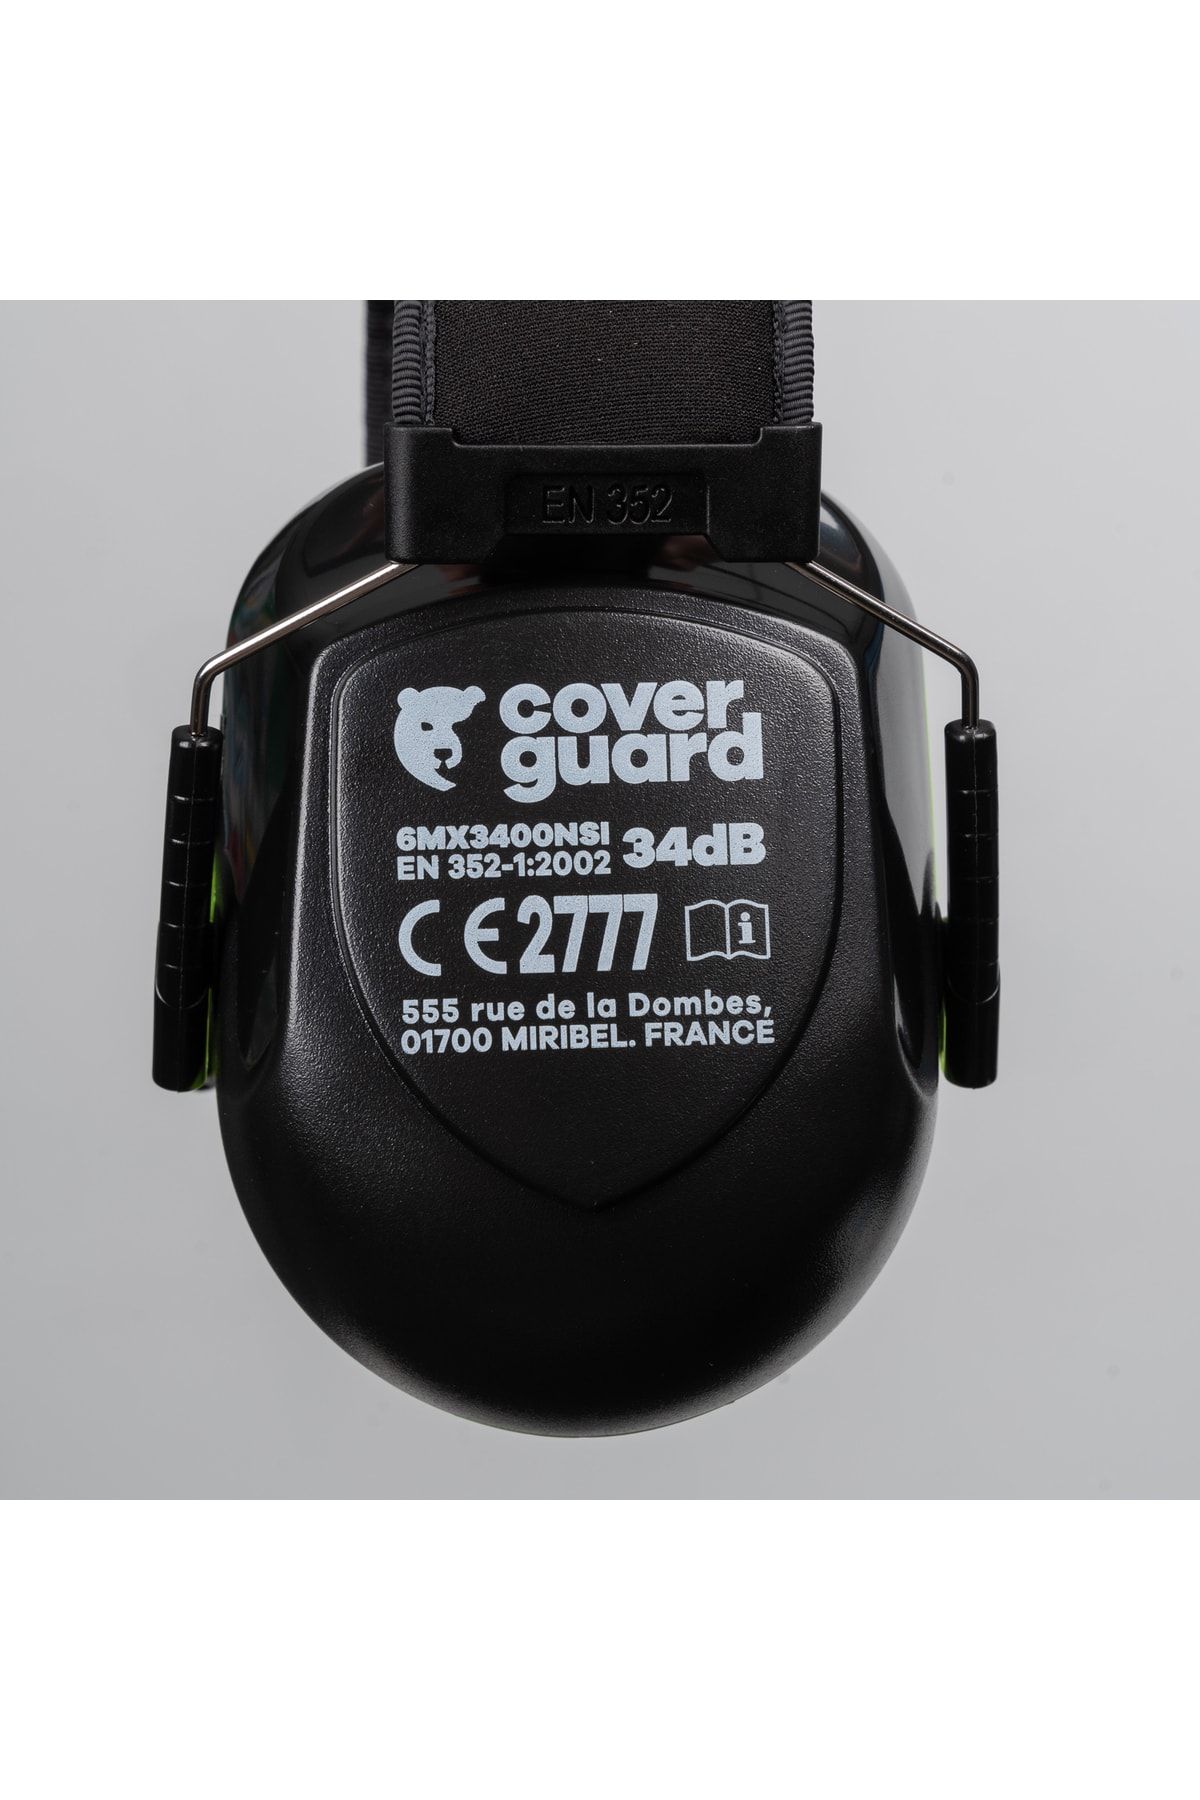 Coverguard Kafa Bandlı Max 340 Gürültü Önleyici Kulaklık Iş Güvenliği